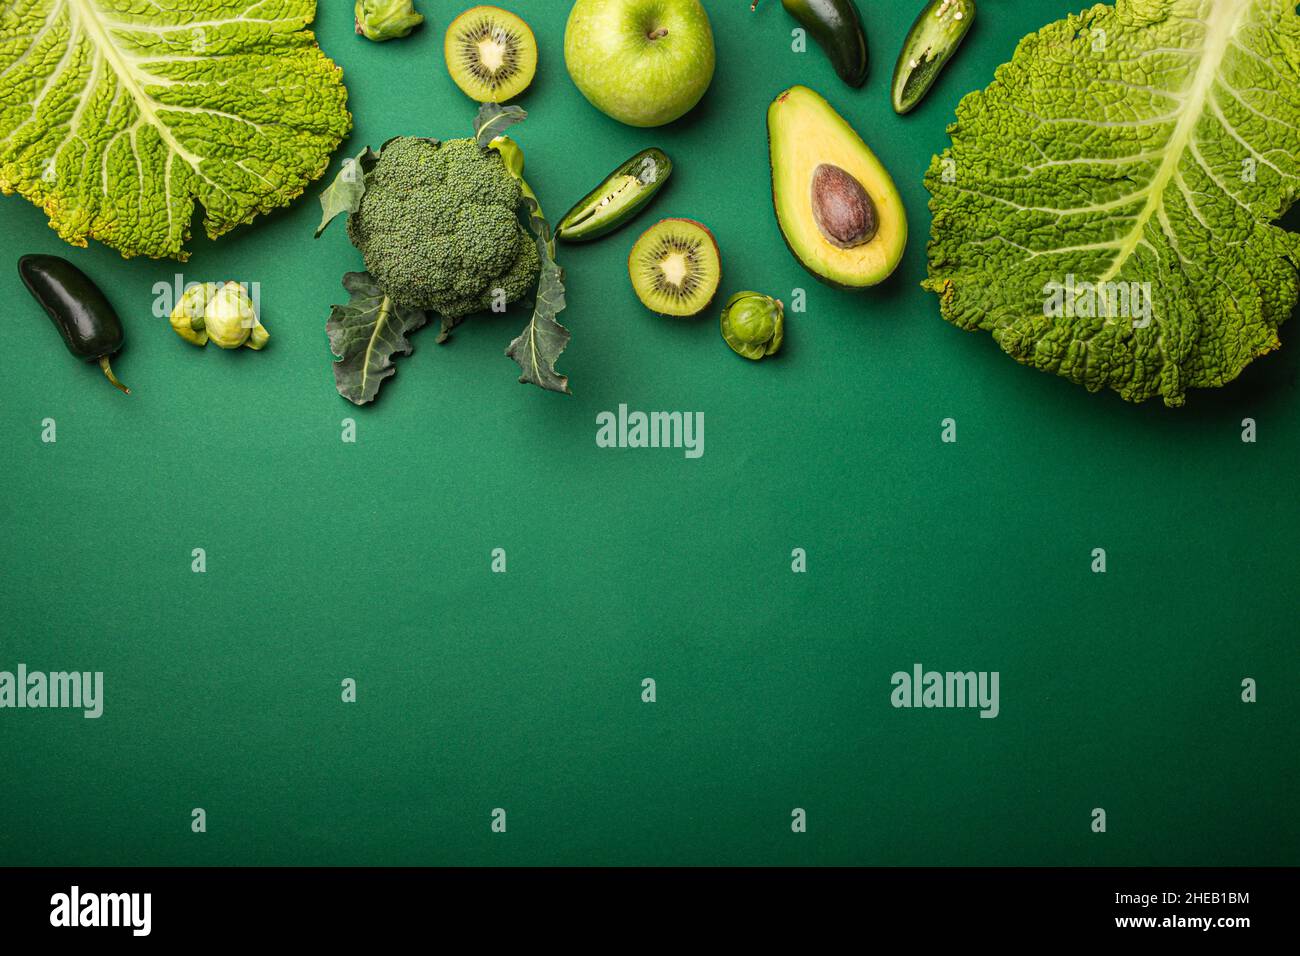 Mise en page créative concept alimentaire fait de fruits et légumes verts sur fond vert Banque D'Images